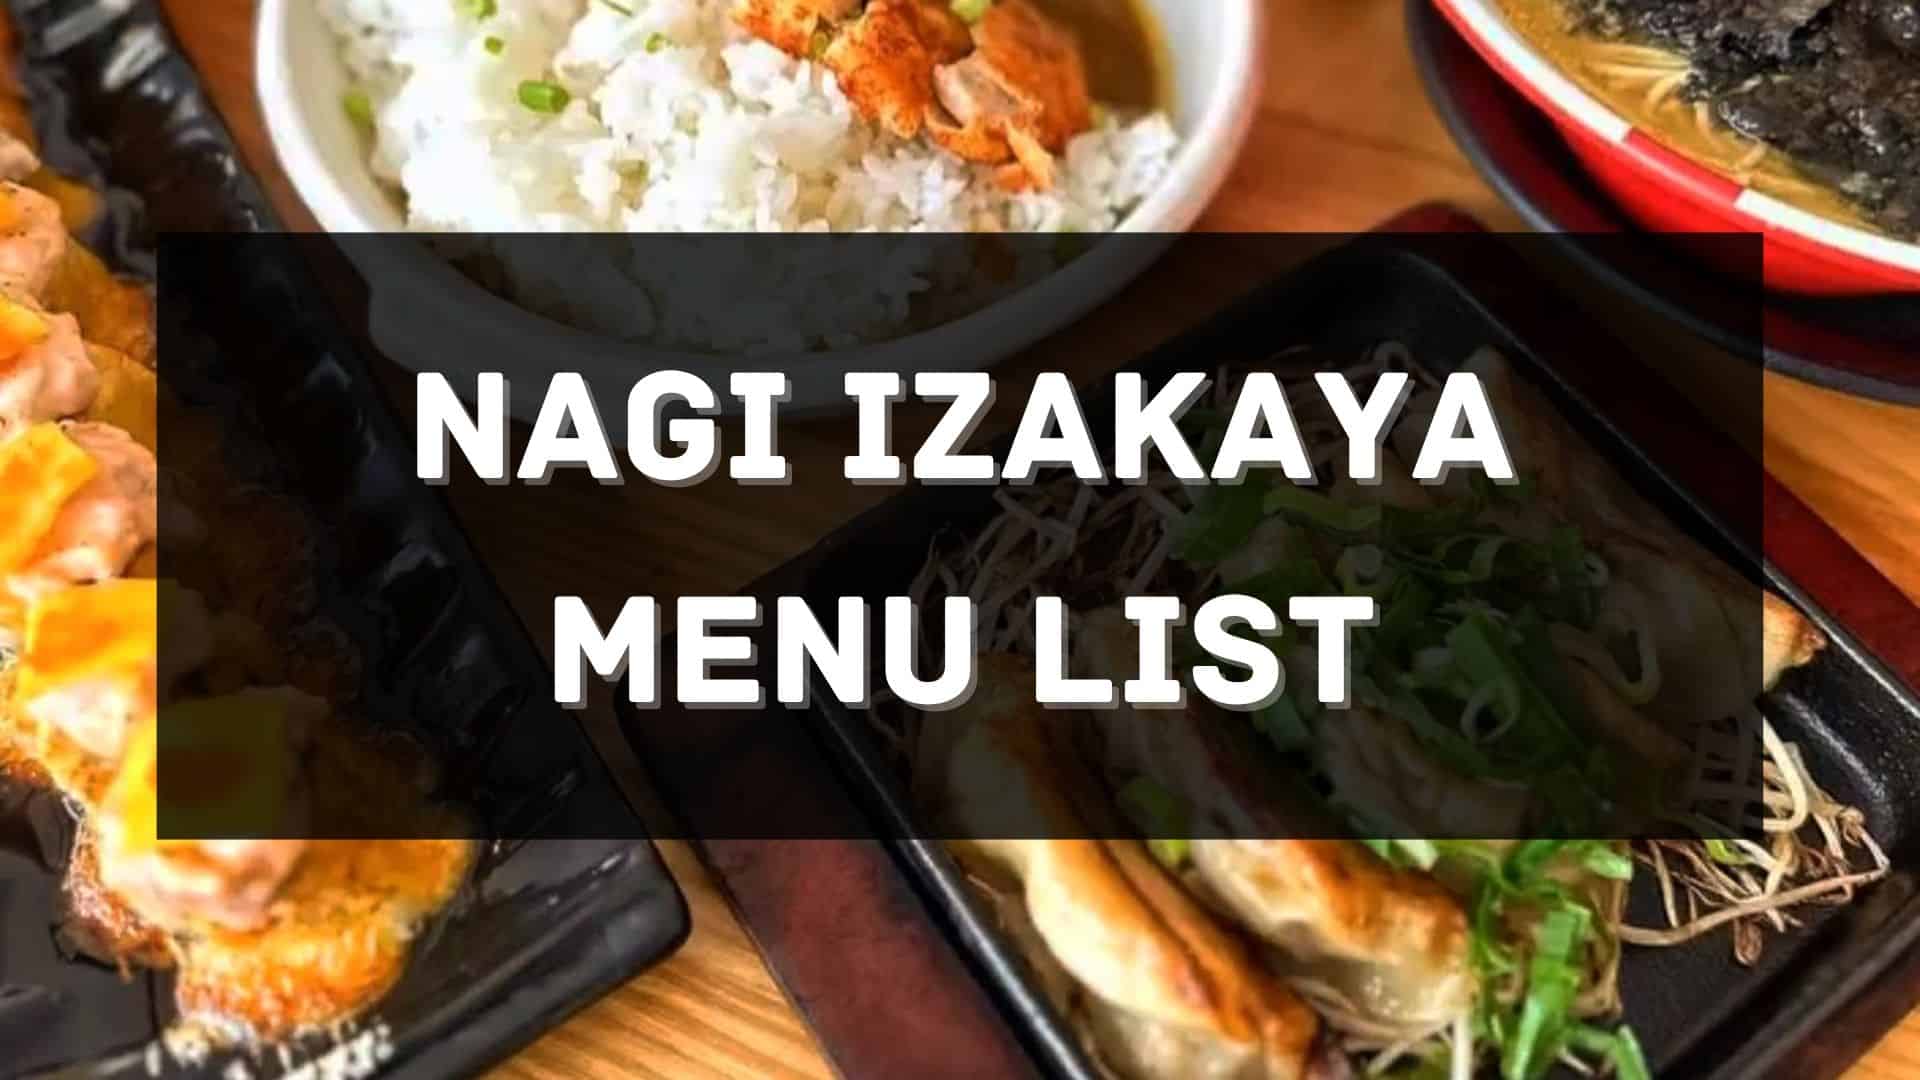 nagi izakaya menu prices philippines